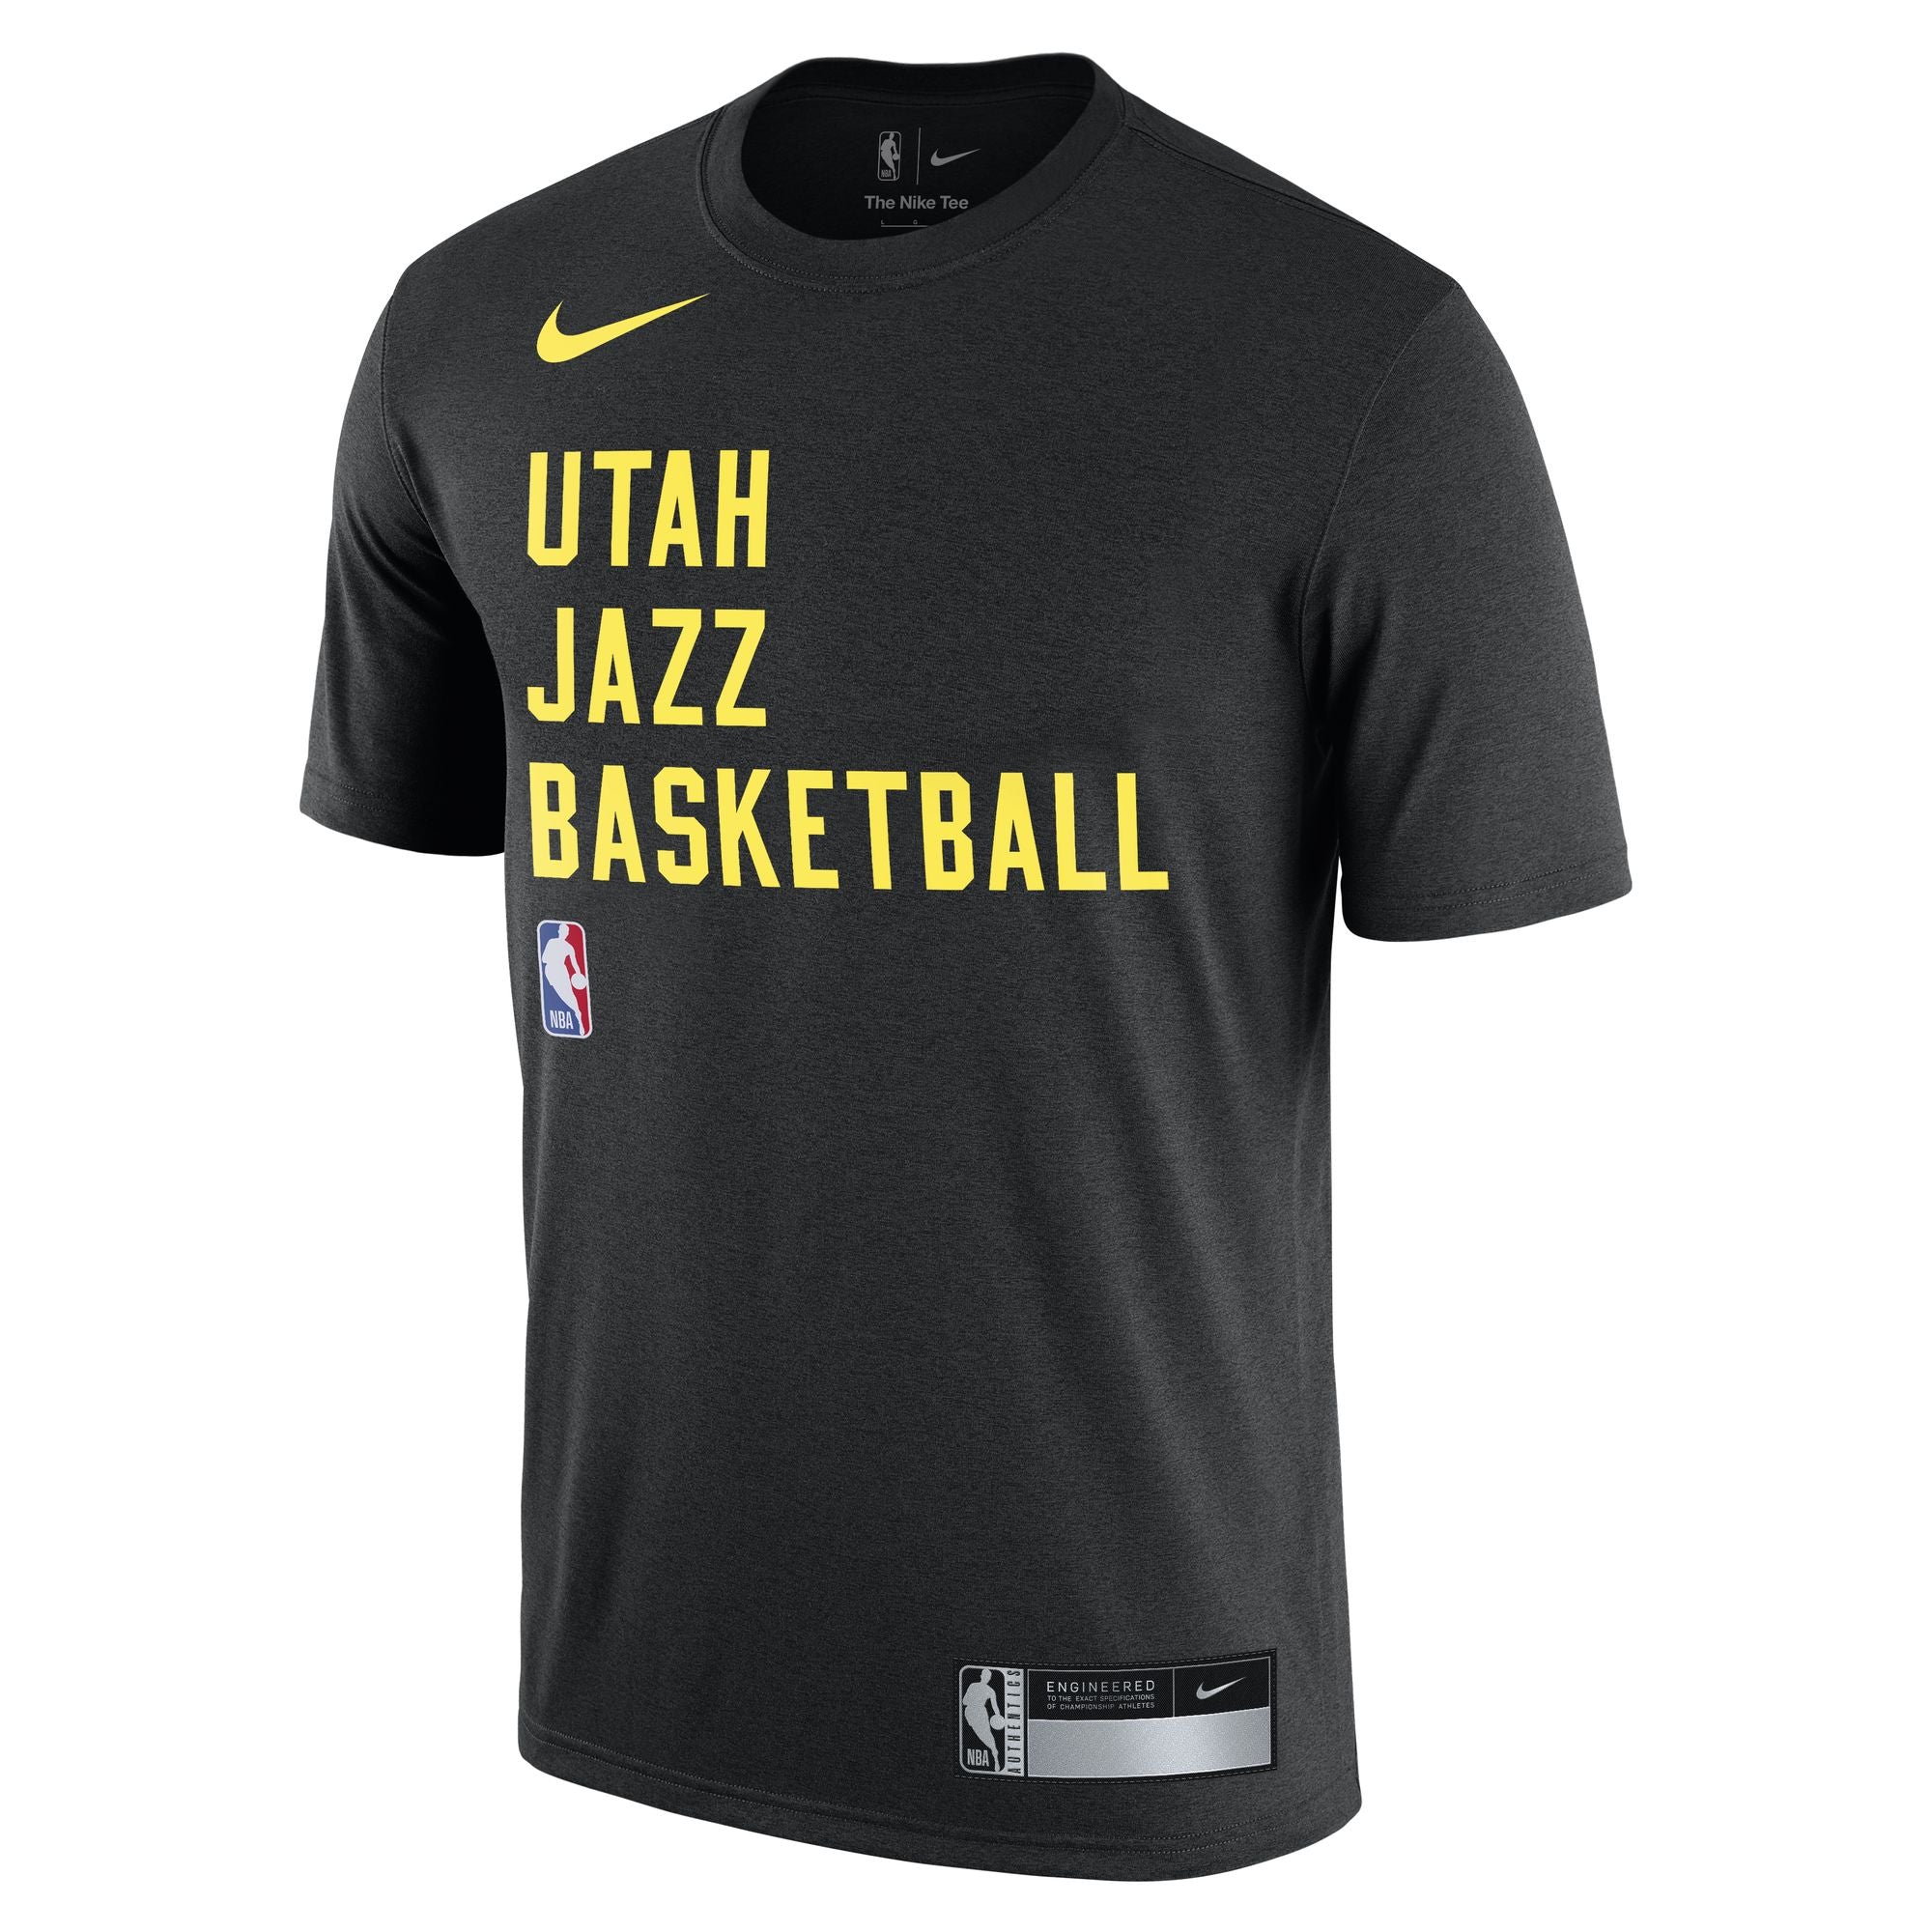 Utah Jazz Team Store on X: New #CityEdition hoodie looking pretty